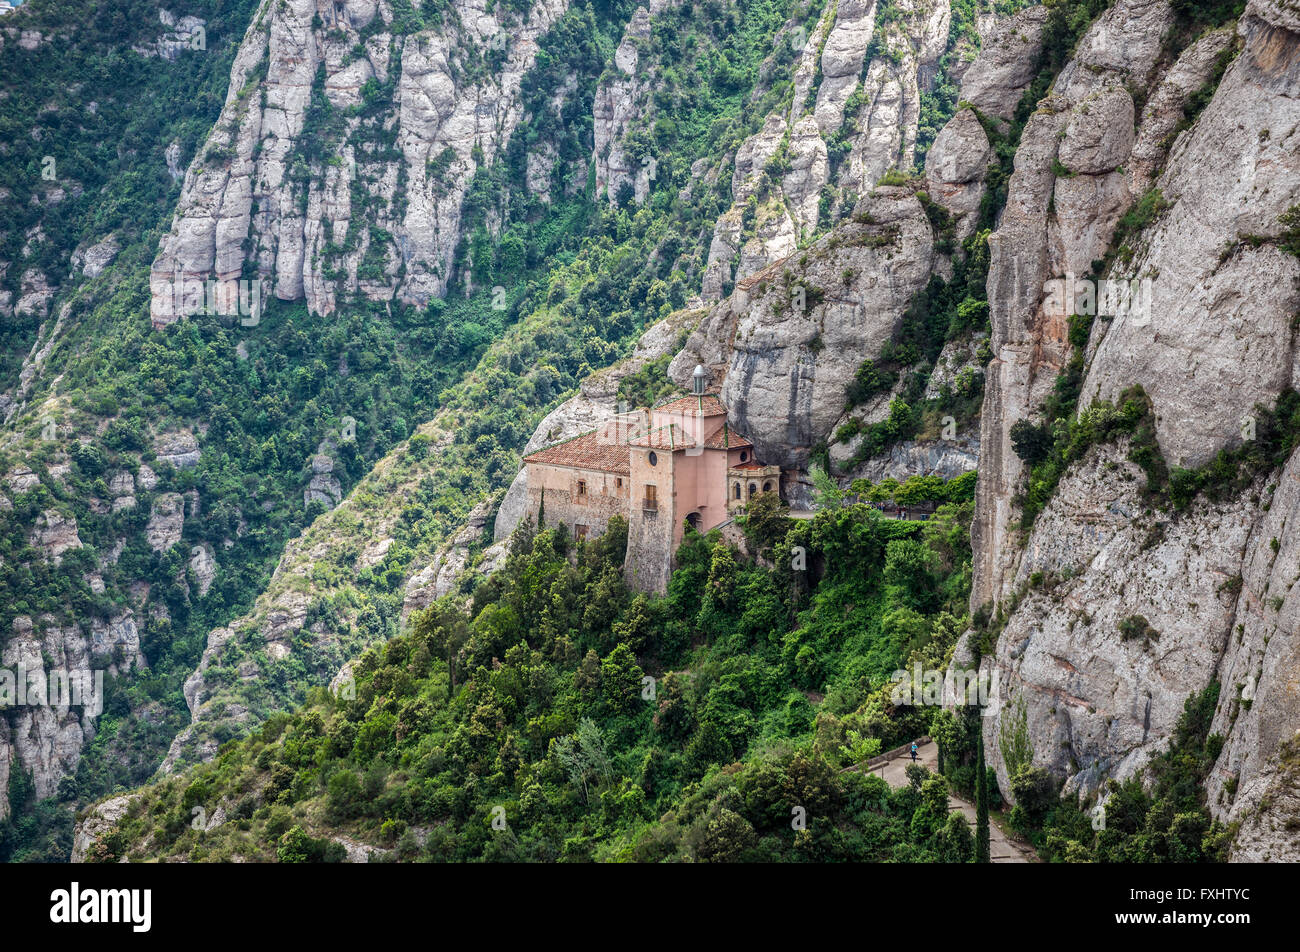 Vue aérienne avec la Sainte Grotte de Montserrat près de abbaye bénédictine Santa Maria de Montserrat, la montagne de Montserrat, en Catalogne, Espagne Banque D'Images